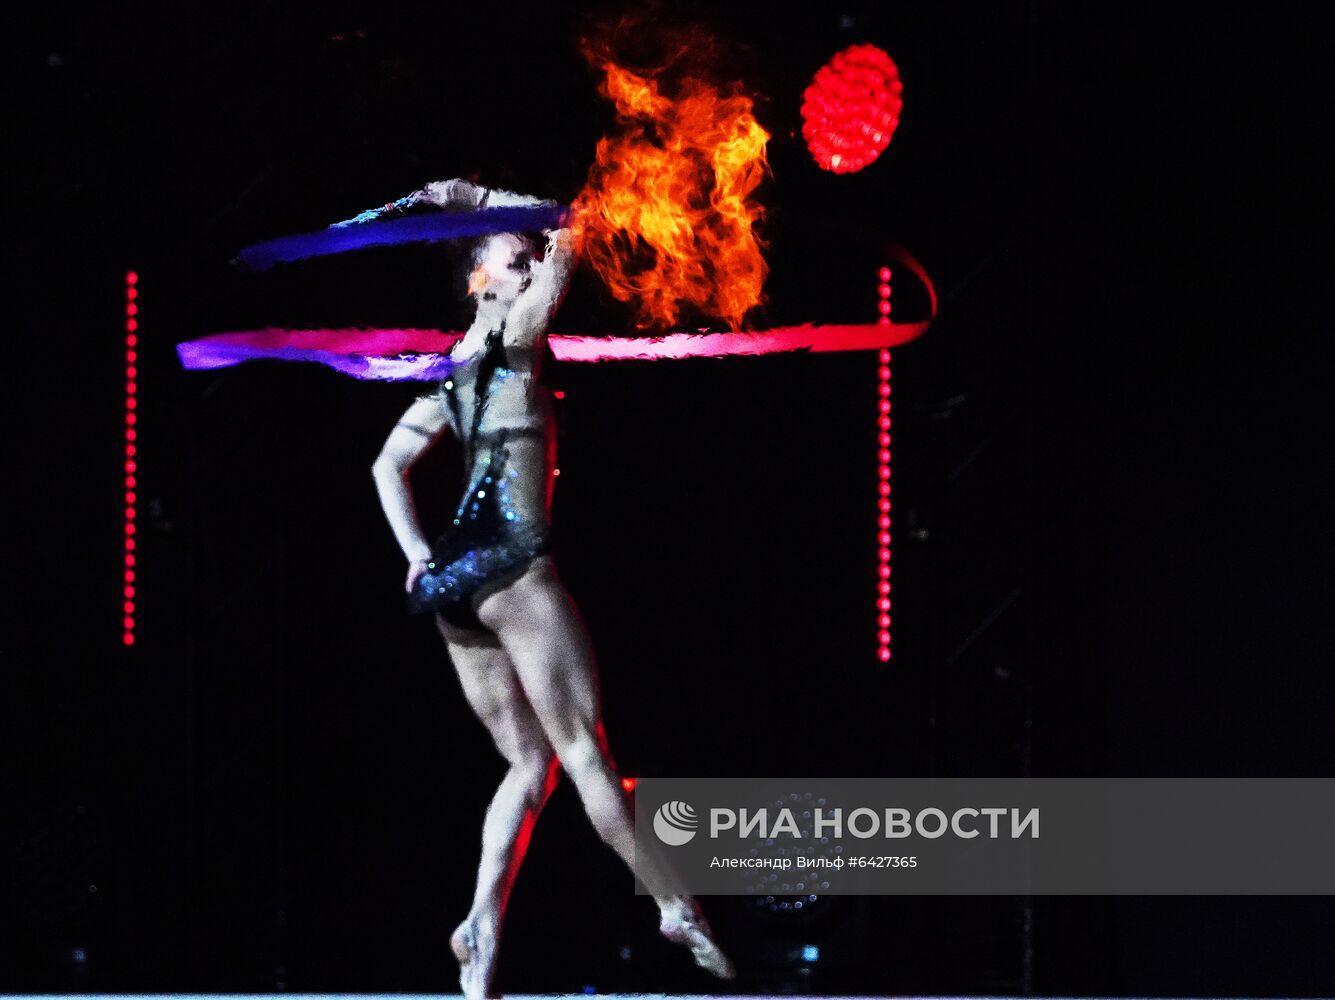 Новогоднее шоу олимпийских чемпионов "Лед и Пламень"